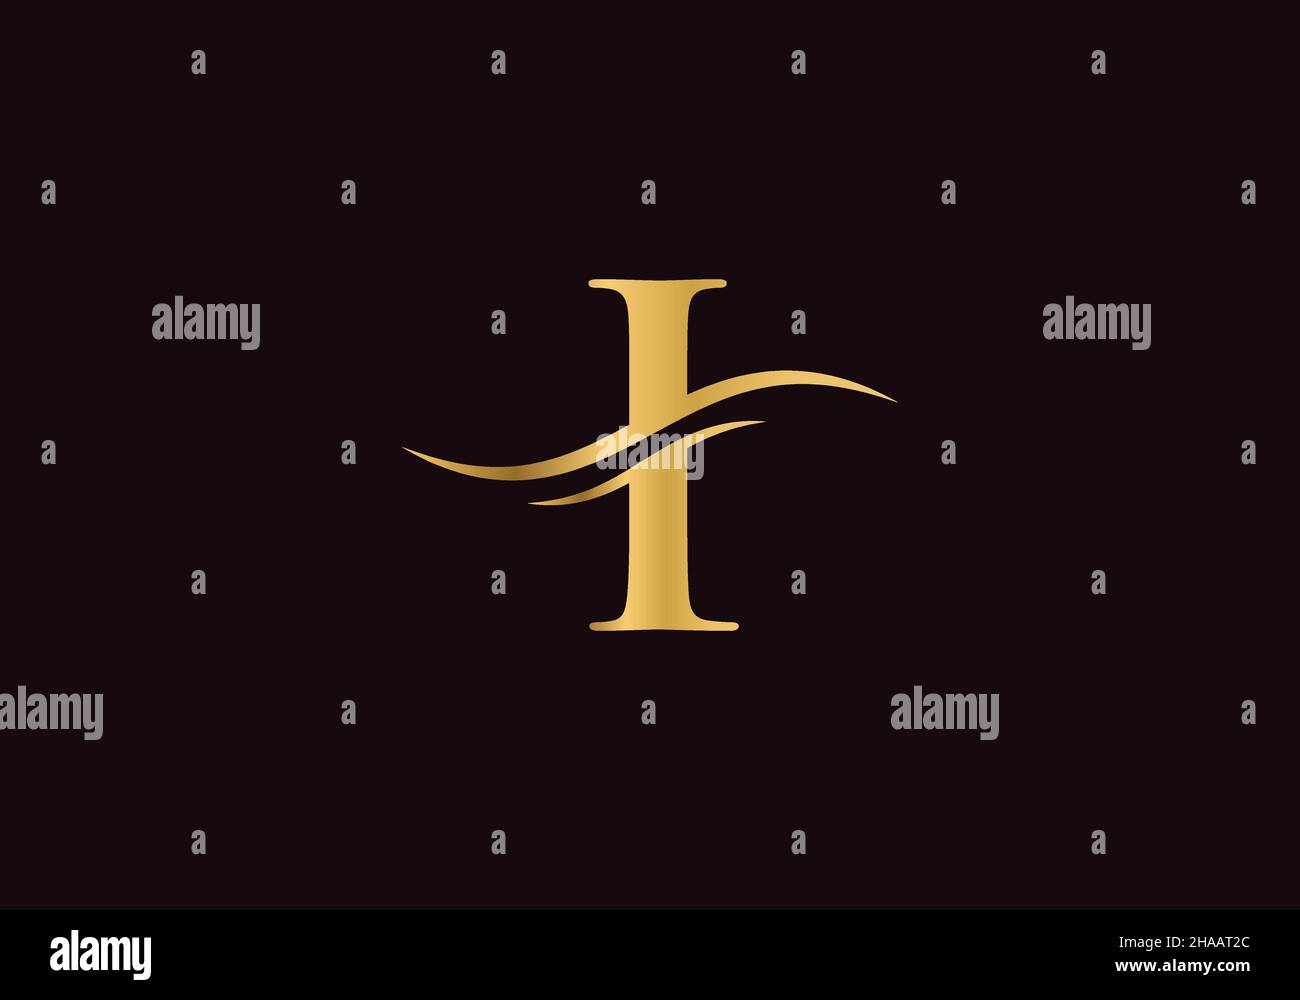 Logo iniziale i lettera con modello vettoriale tipografico creativo e moderno. Disegno creativo astratto della lettera i del logo Illustrazione Vettoriale